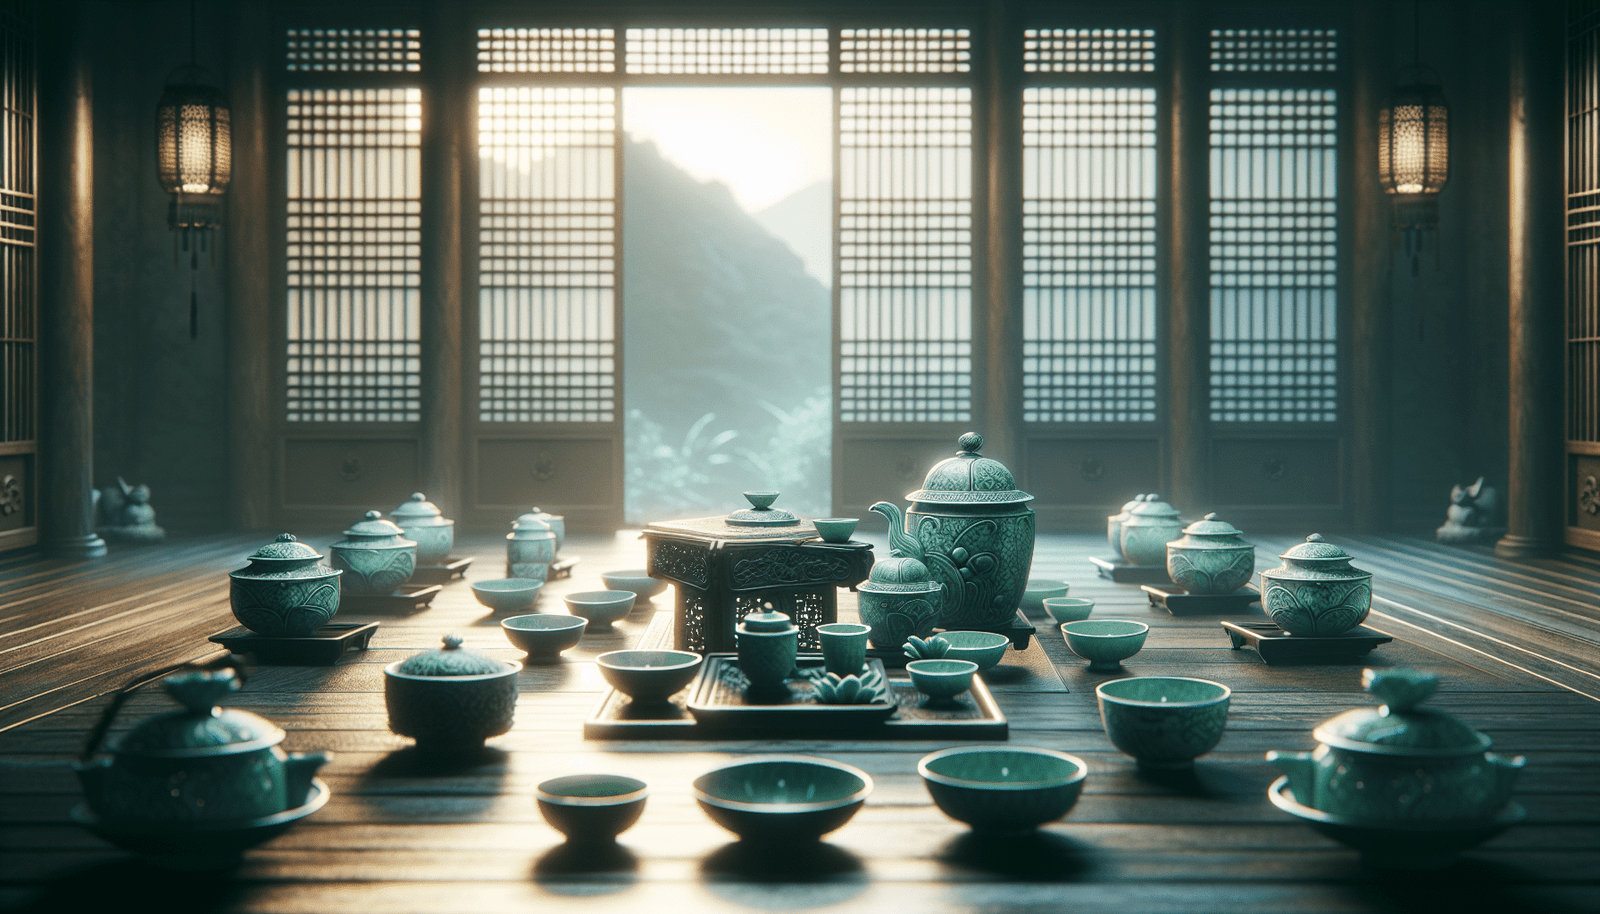 How Do You Properly Enjoy And Appreciate A Traditional Korean Tea Ceremony?